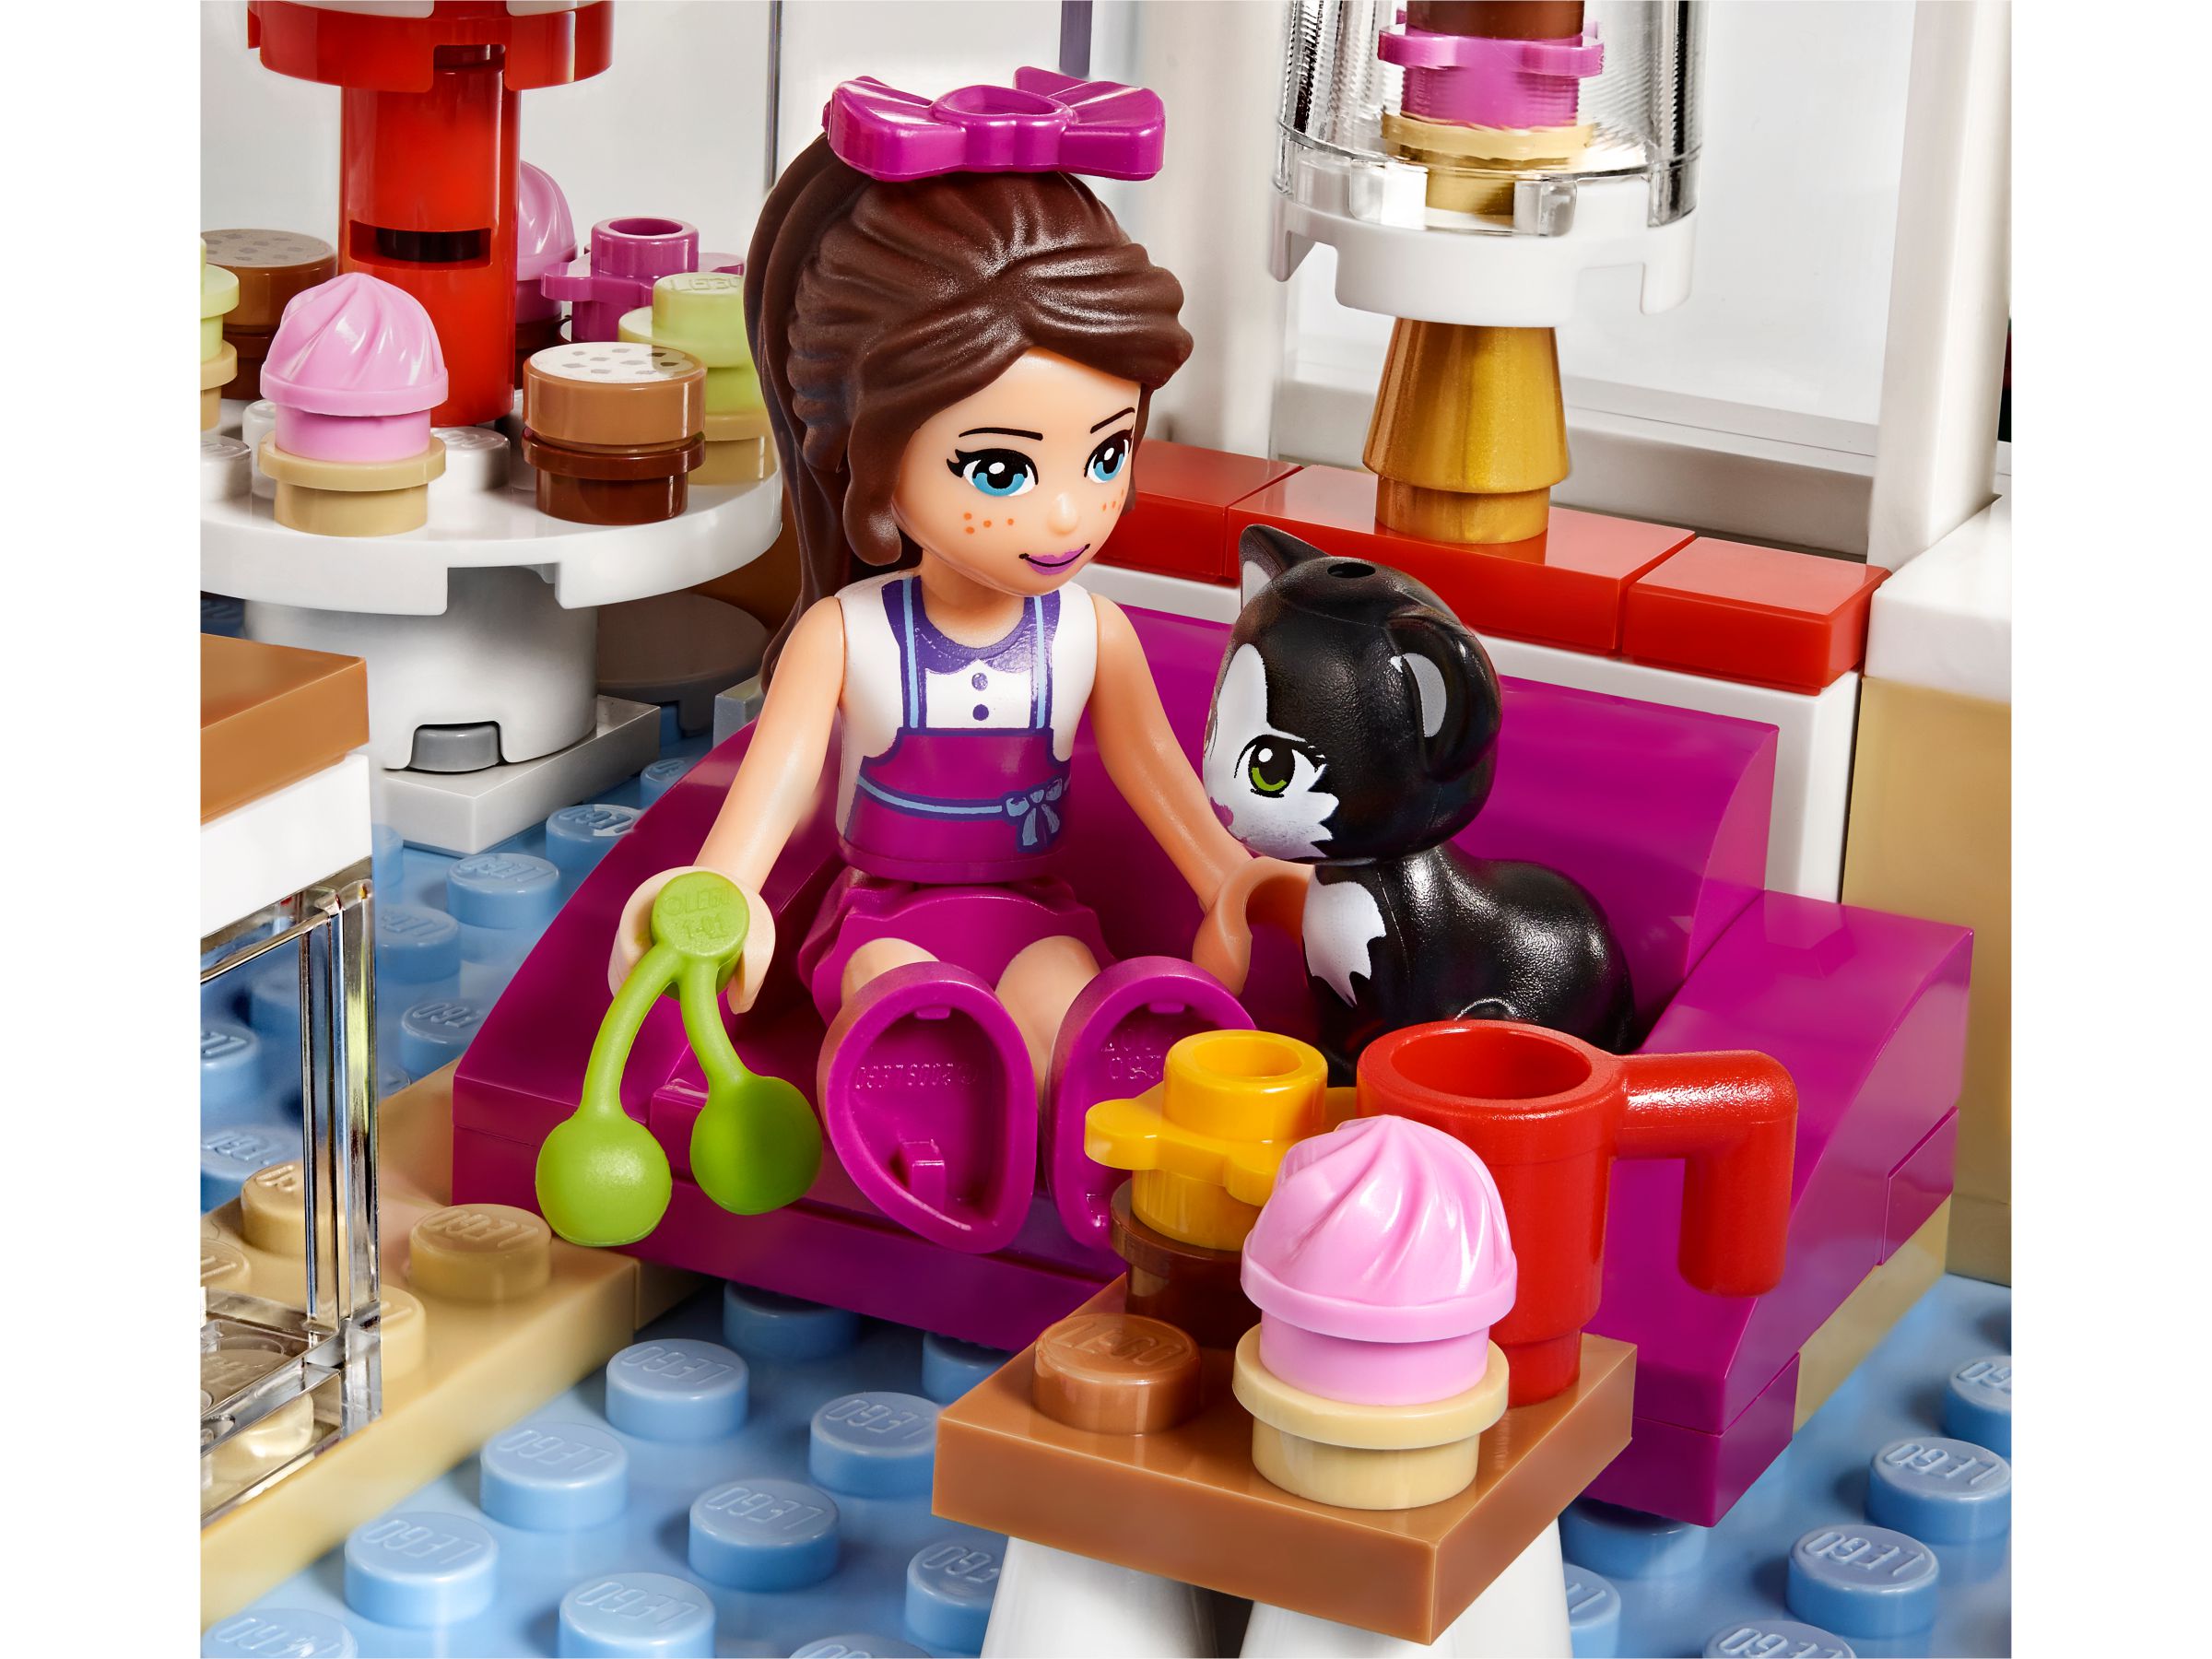 LEGO Friends 41119 Heartlake Cupcake-Café LEGO_41119_alt8.jpg